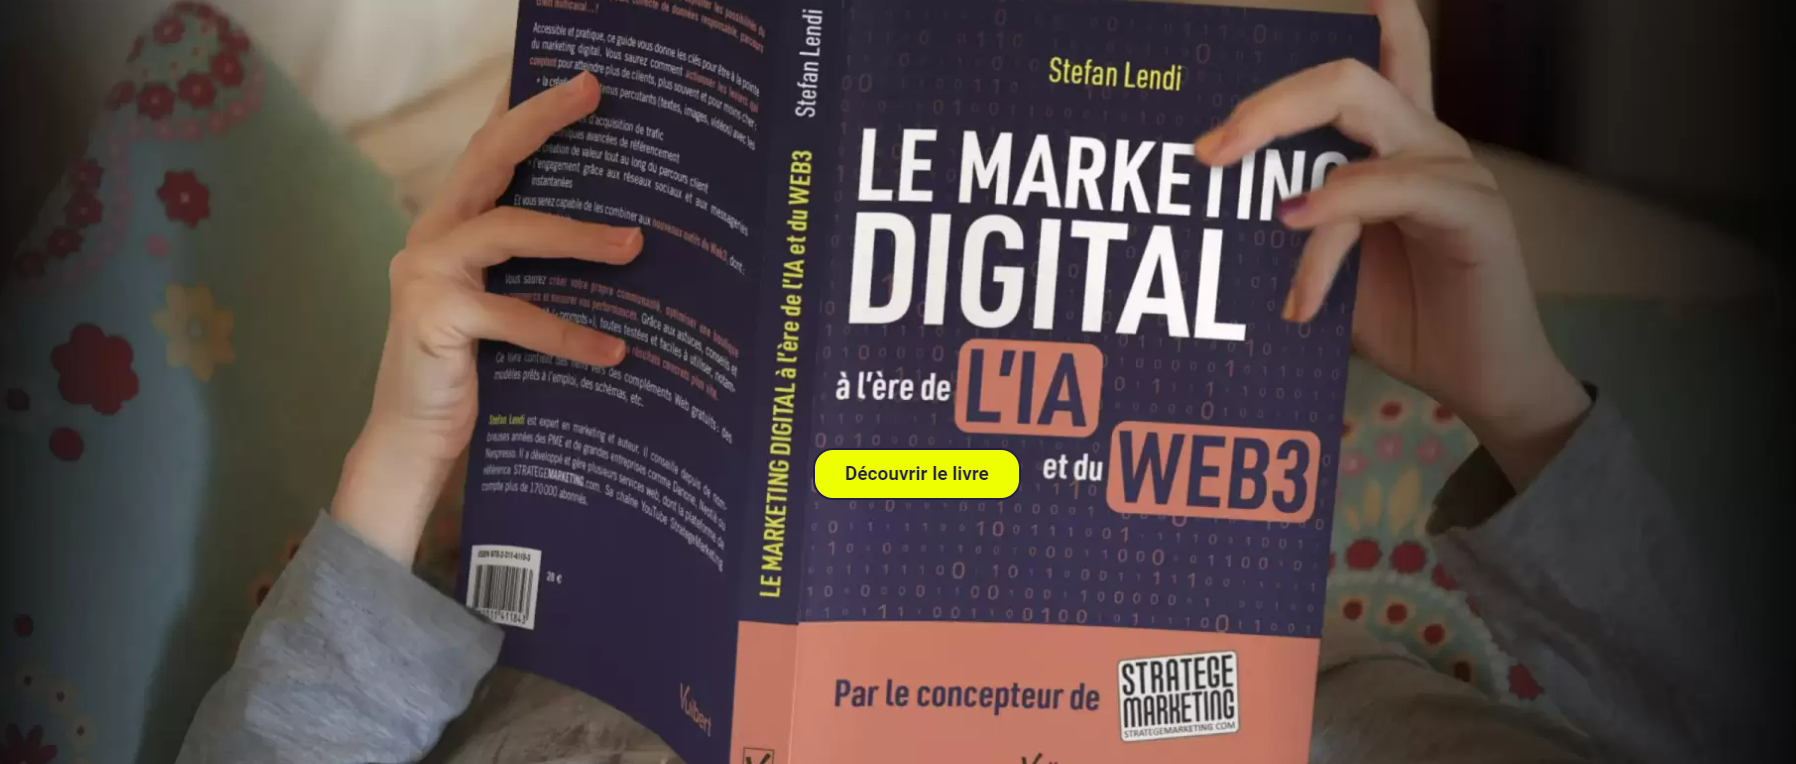 Le Marketing Digital à l'ère de l'IA et du Web 3 - Ce qu'il faut retenir du nouveau livre de Stefan Lendi 5